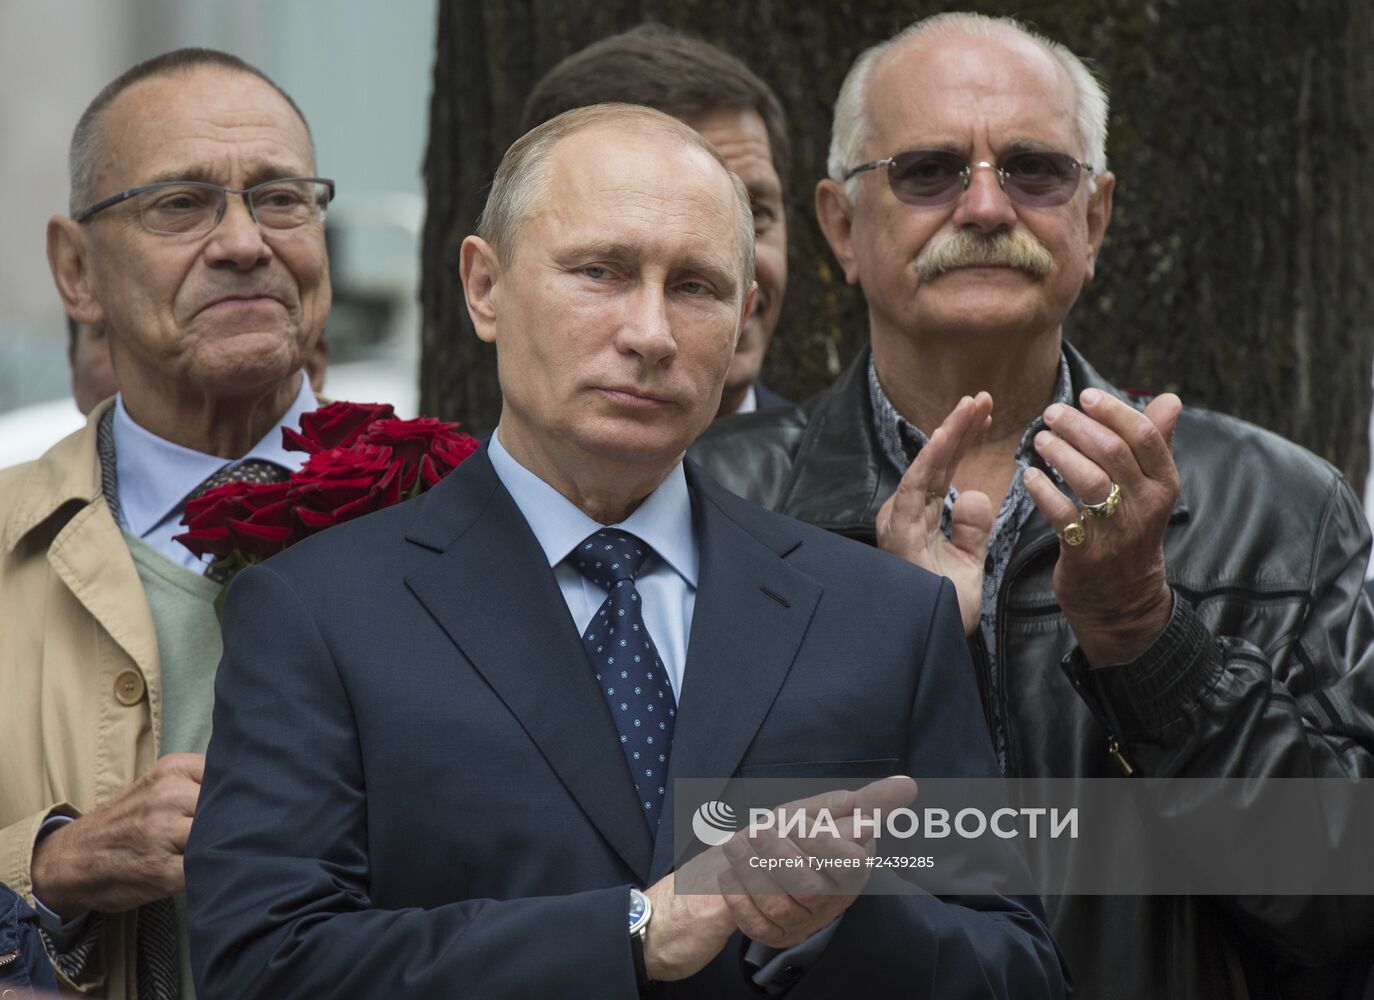 В.Путин на открытии памятника поэту Сергею Михалкову в центре Москвы